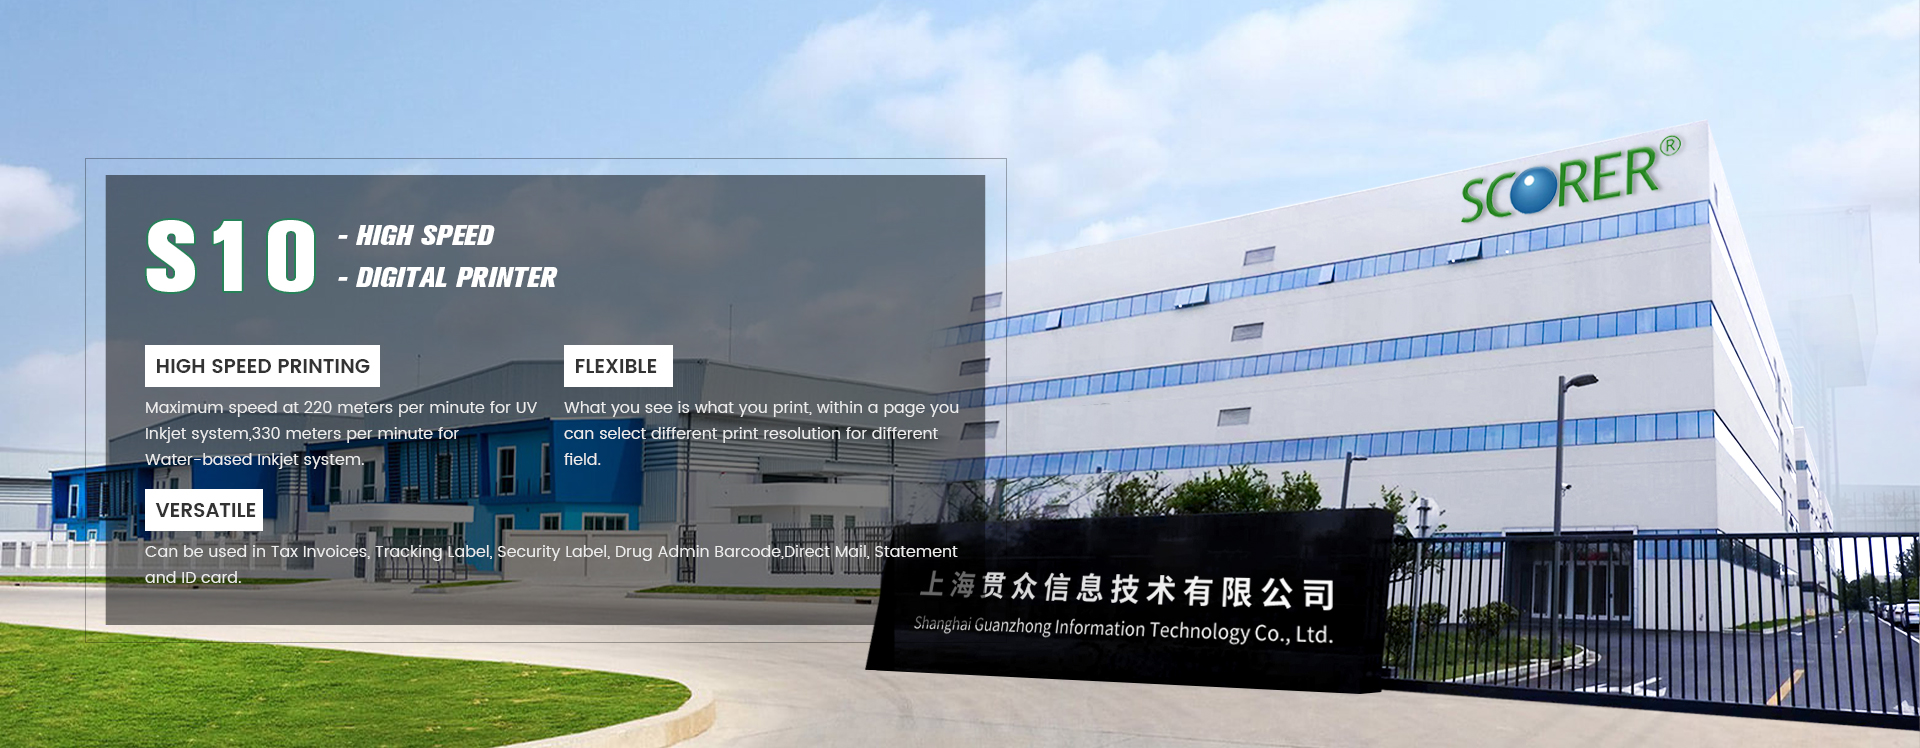 Shanghai Guanzhong Information Technology Co., Ltd.